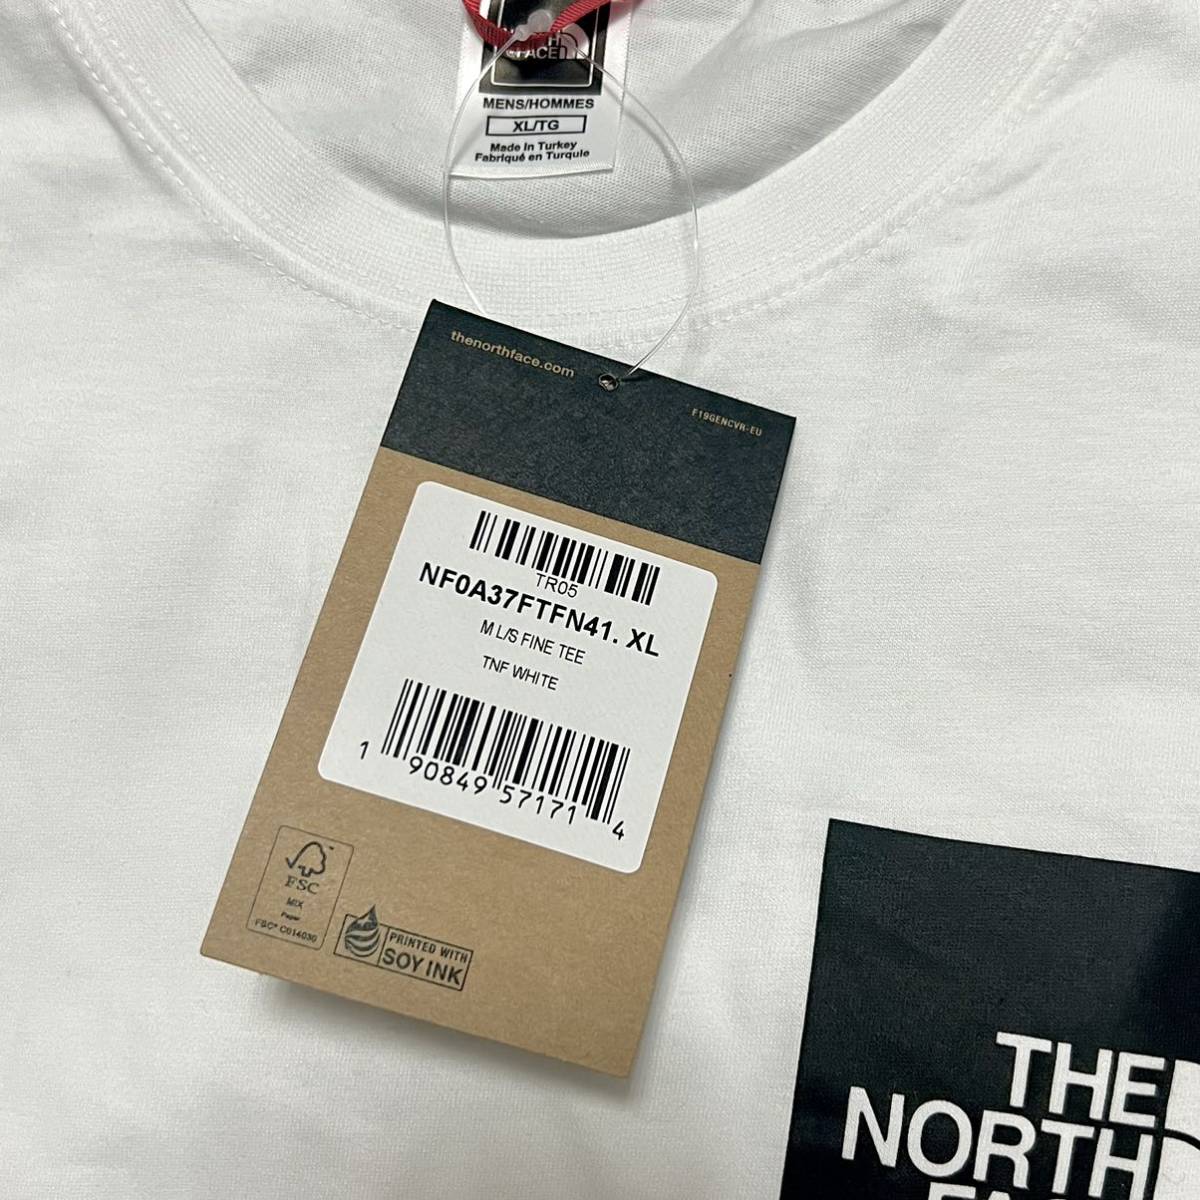 XL 新品 日本未発売 海外限定 ノースフェイス スクエアロゴ ロンＴ 長袖 Tシャツ ボックスロゴ 白 ホワイト ブックス ロゴ 胸ロゴ スクエア